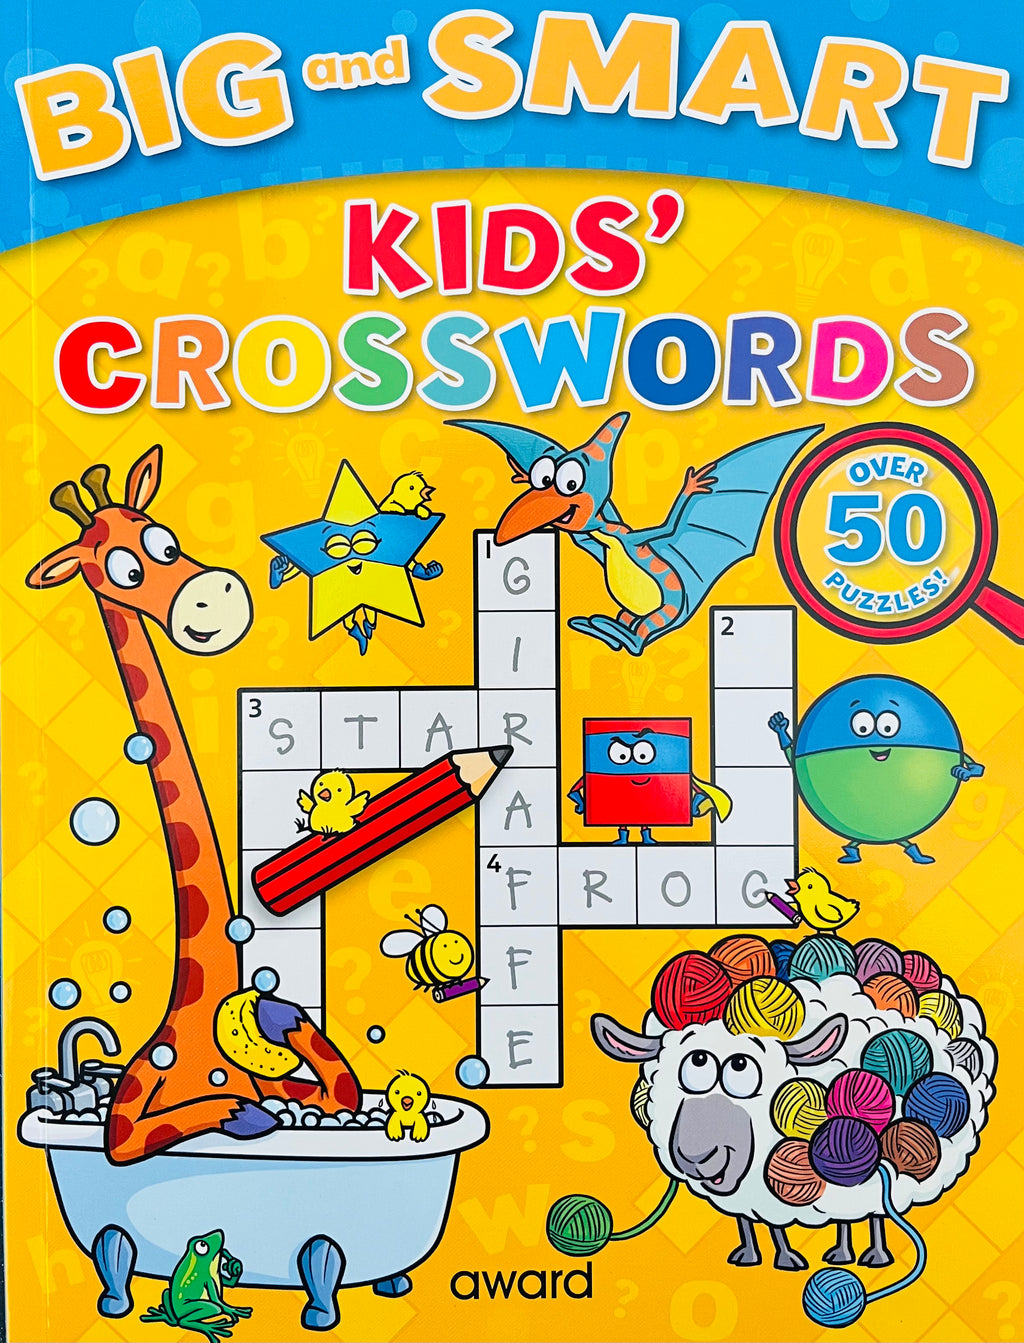 Big and smart: Kids Crosswords